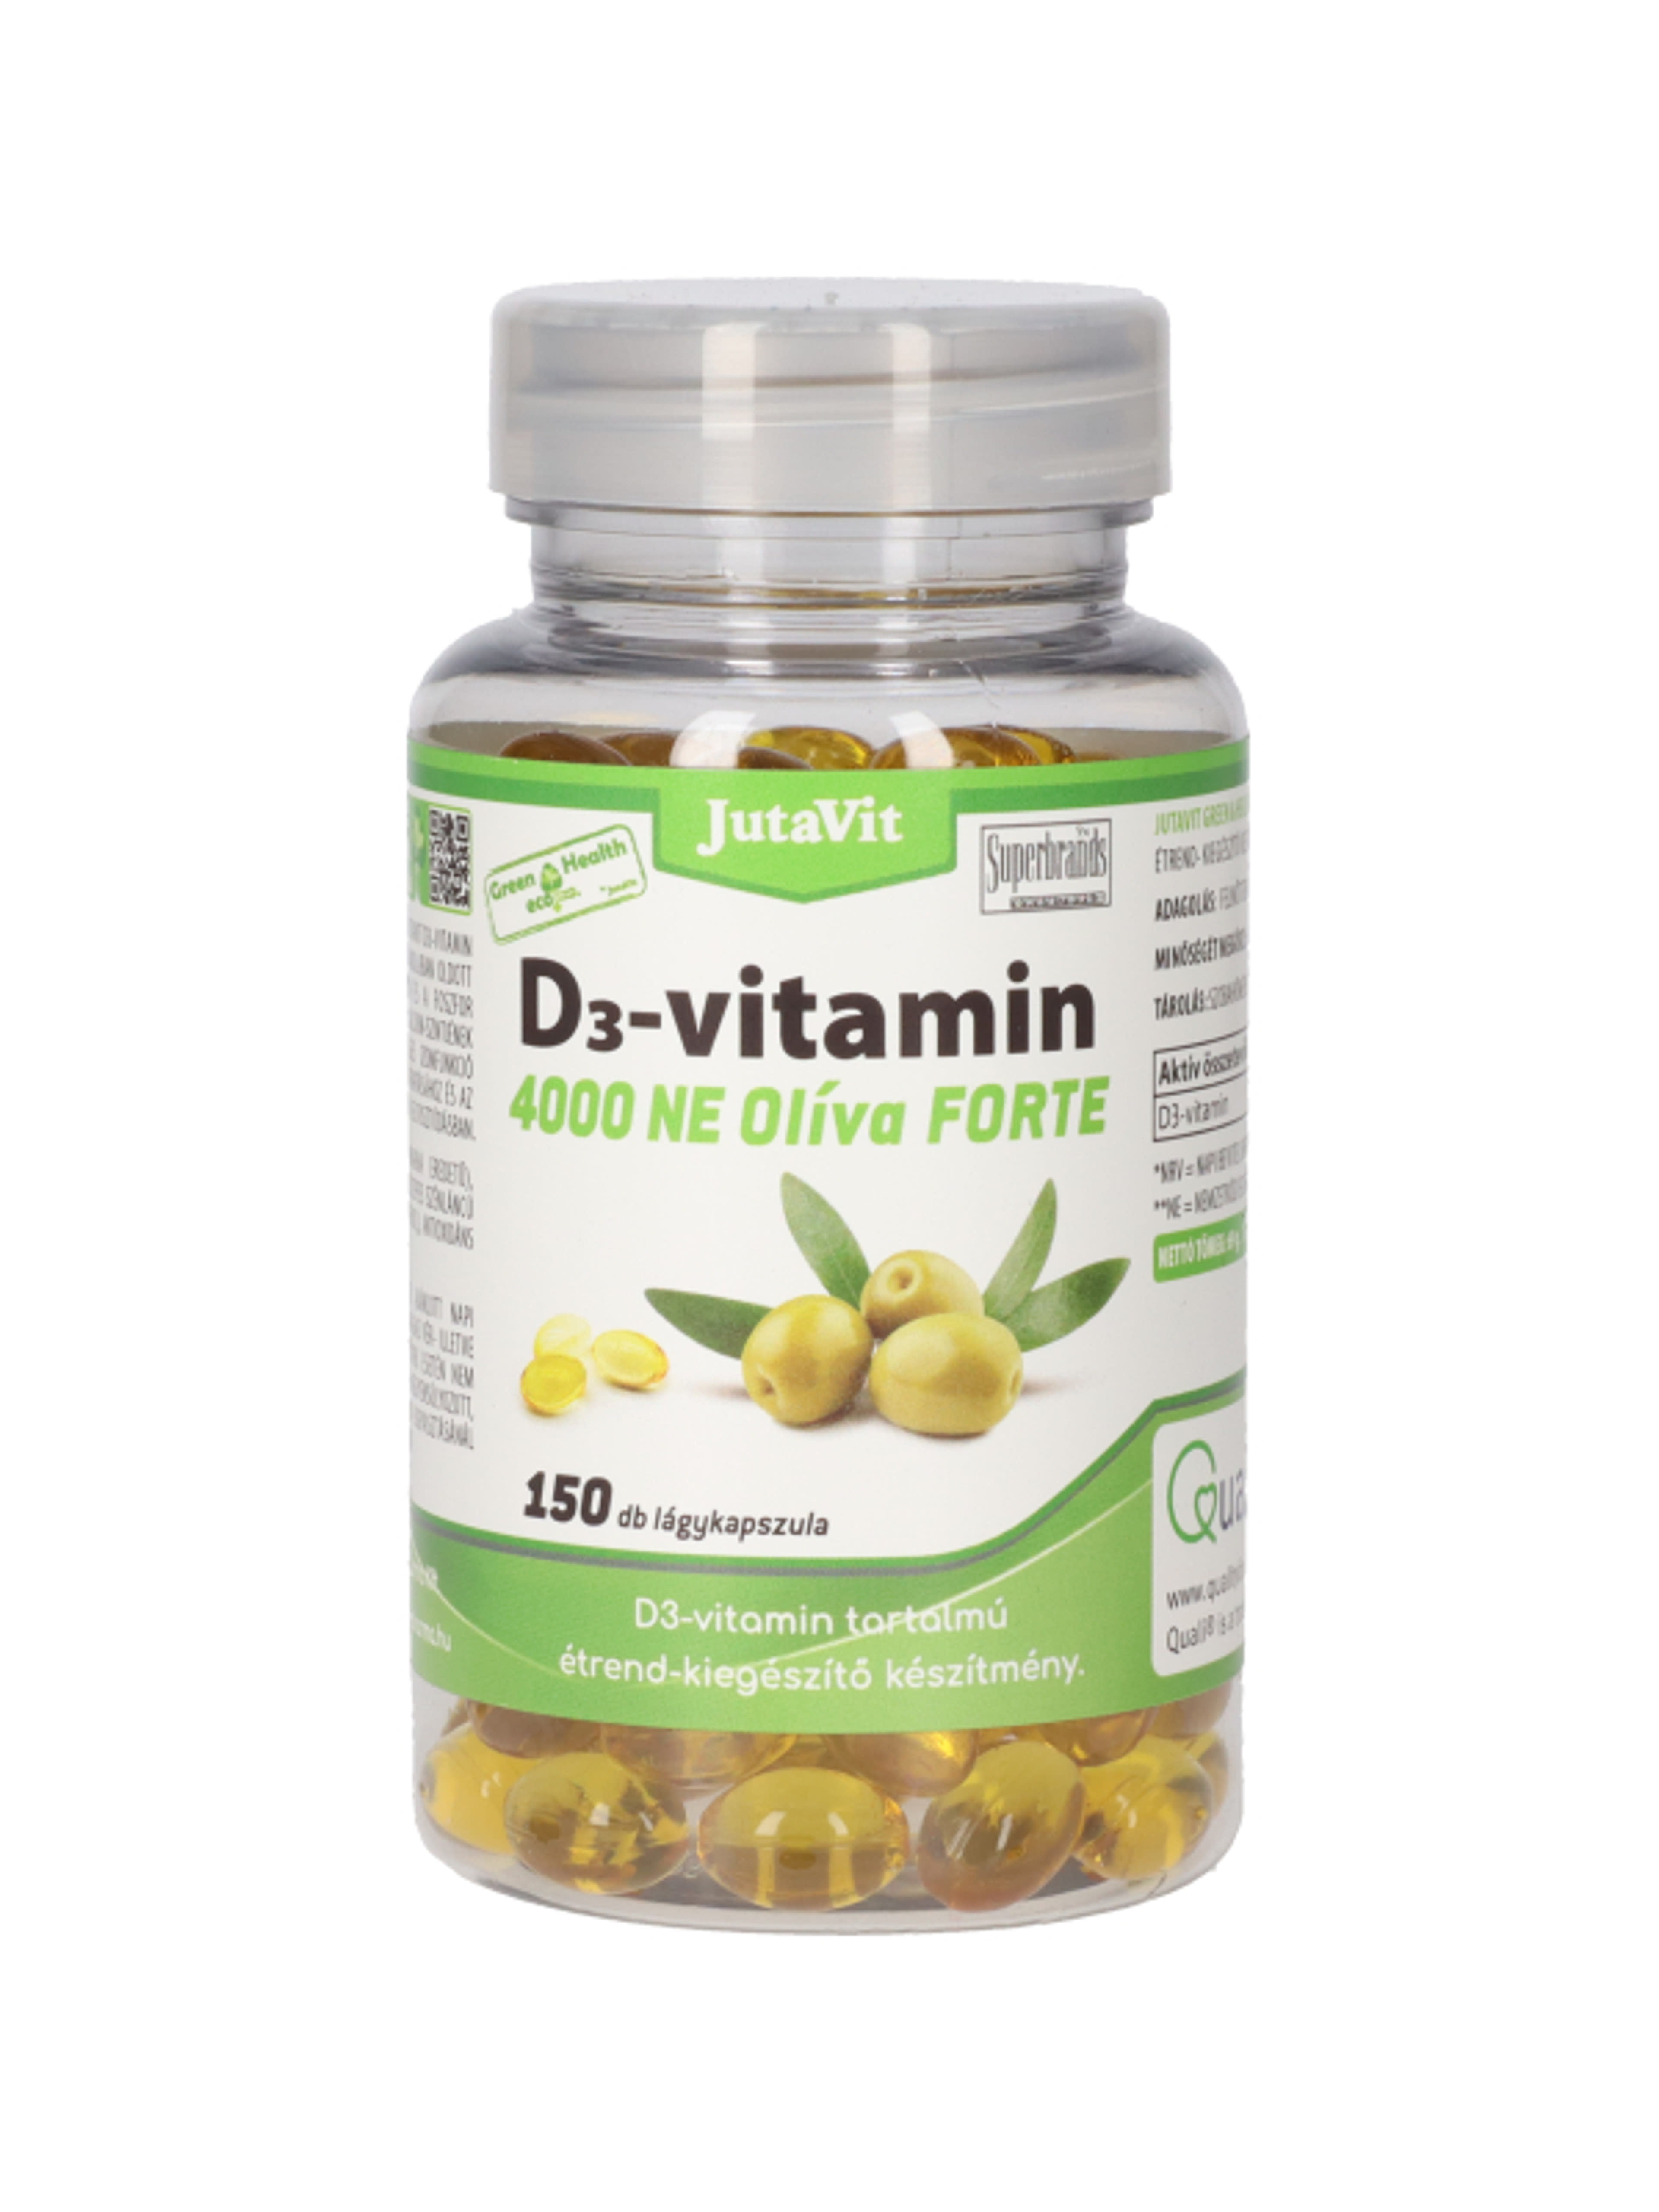 Jutavit Green & Health D3-vitamin 4000 NE Olíva Forte étrend-kiegészítő lágykapszula - 150 db